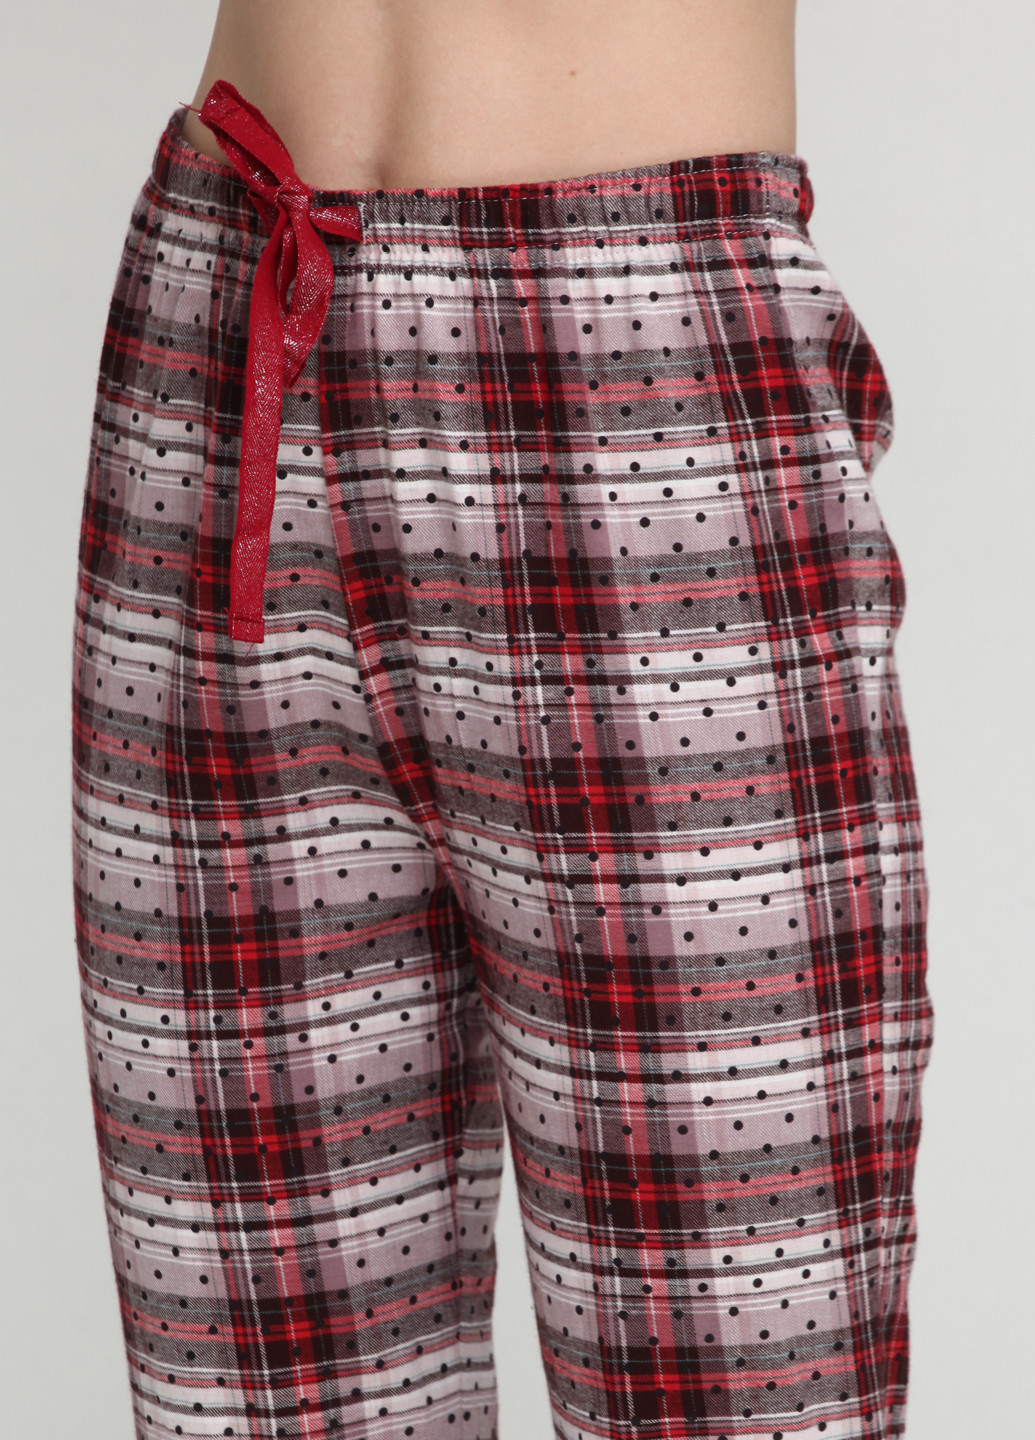 Бордовая всесезон пижама (пуловер, брюки) Women'secret